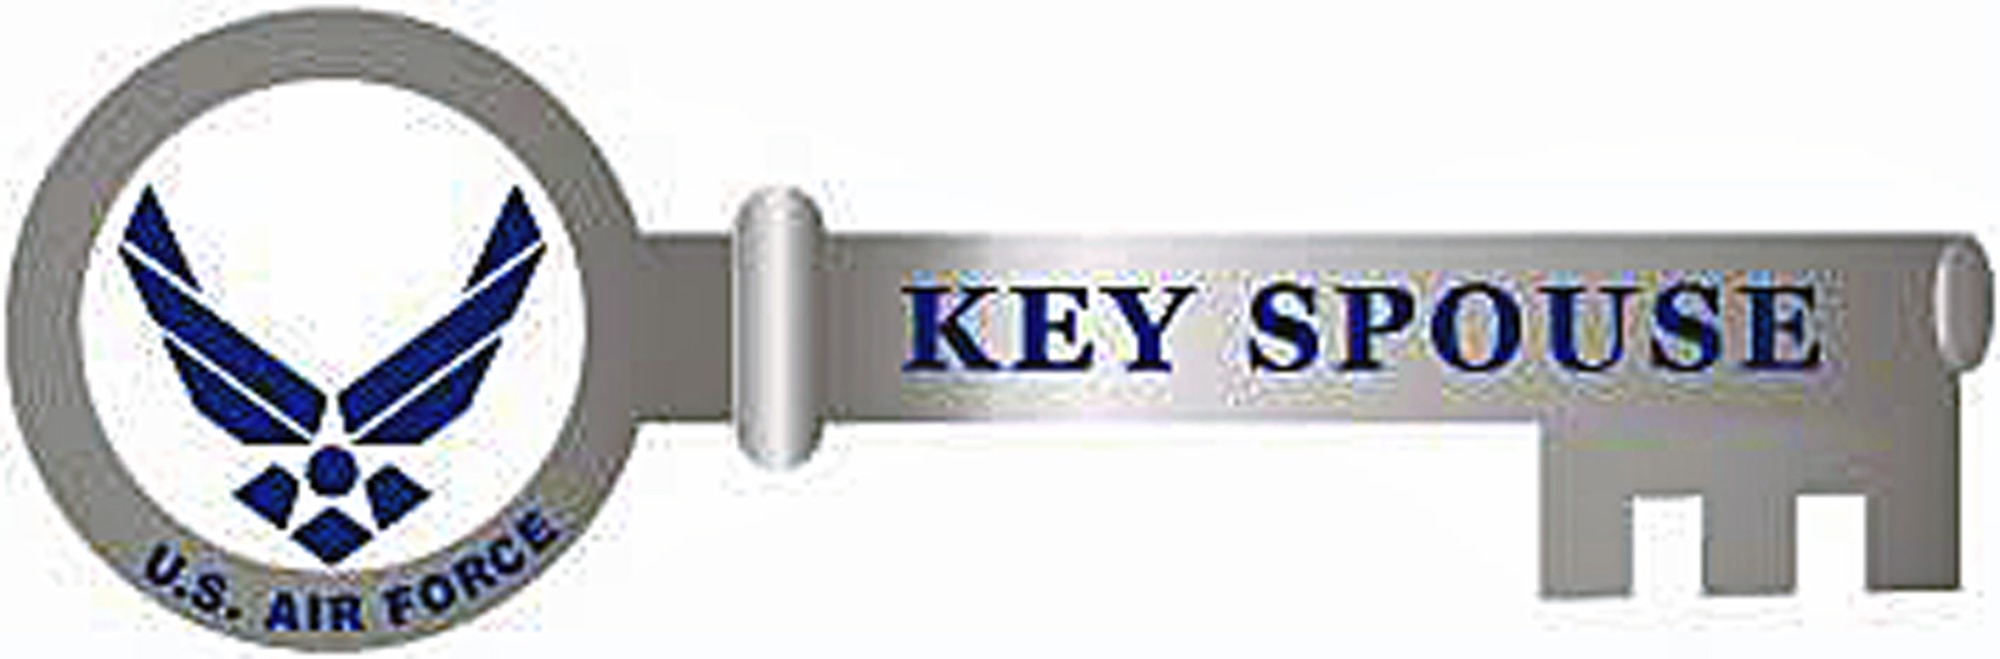 U.S. Air Force Key Spouse logo